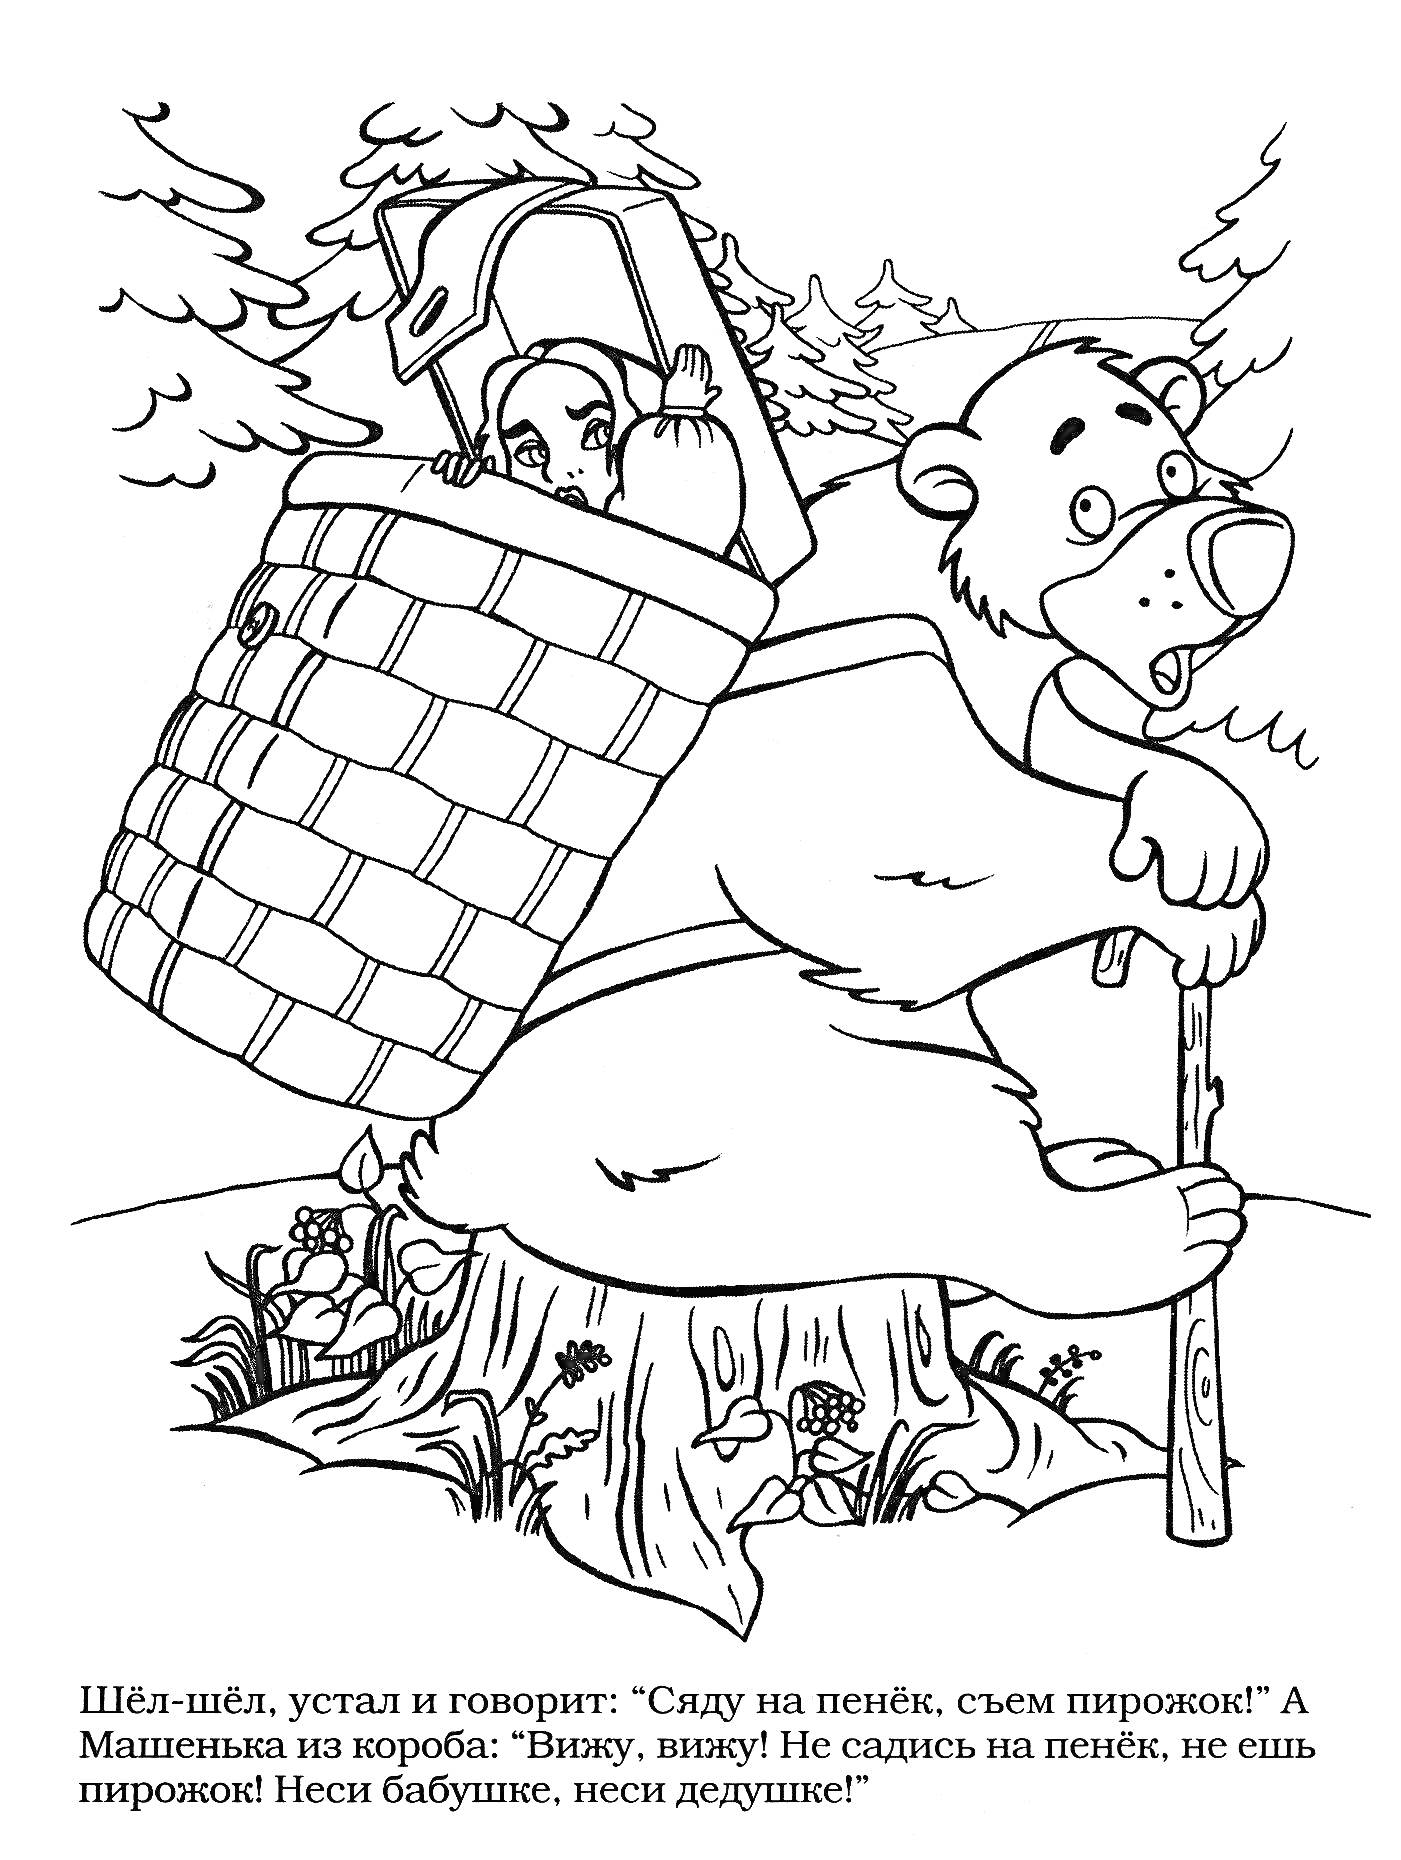 Раскраска Маша и Медведь на пеньке - Маша в корзине у Медведя, несущего коробку с пирожками через лес